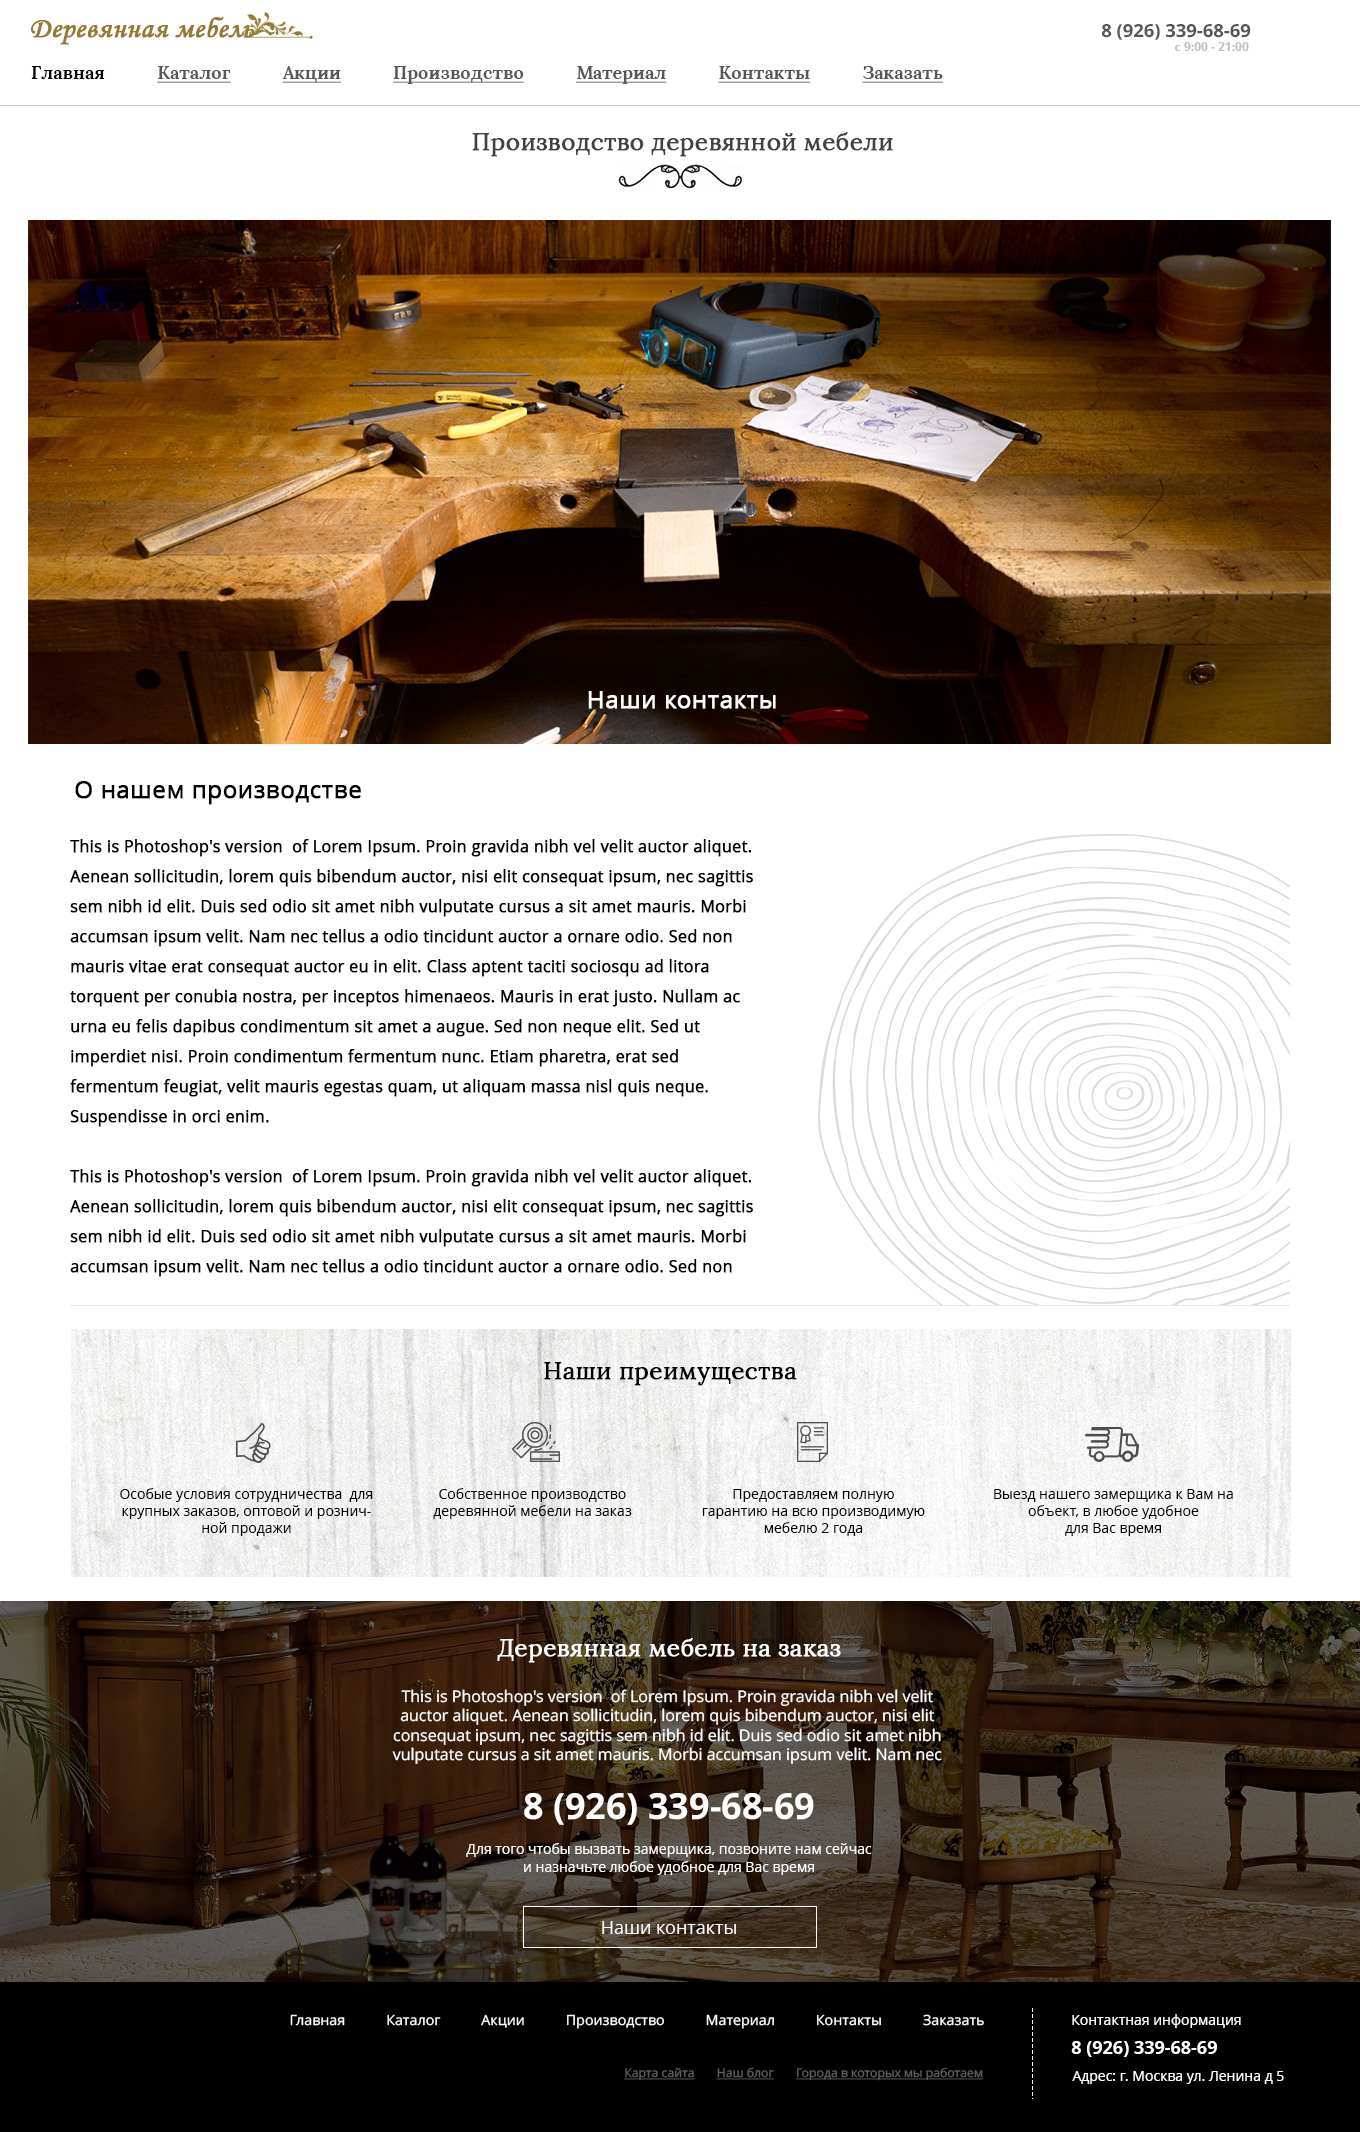 Макет сайта Производство деревянной мебели 5